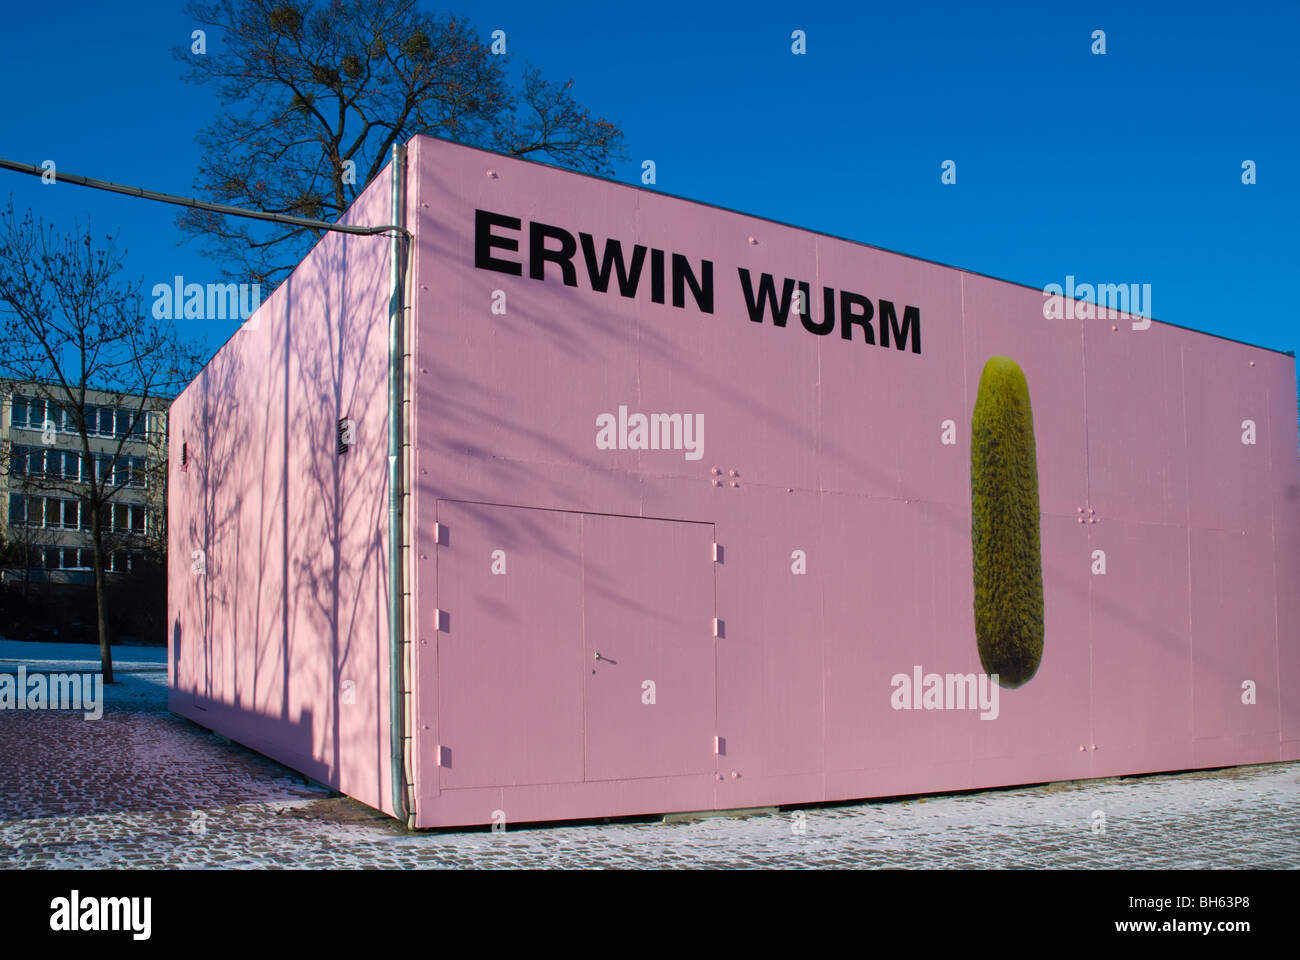 Edwin Wurm exposition annonce à l'extérieur musée Kunstbau Munich Bavaria Allemagne Europe Königsplatz Banque D'Images